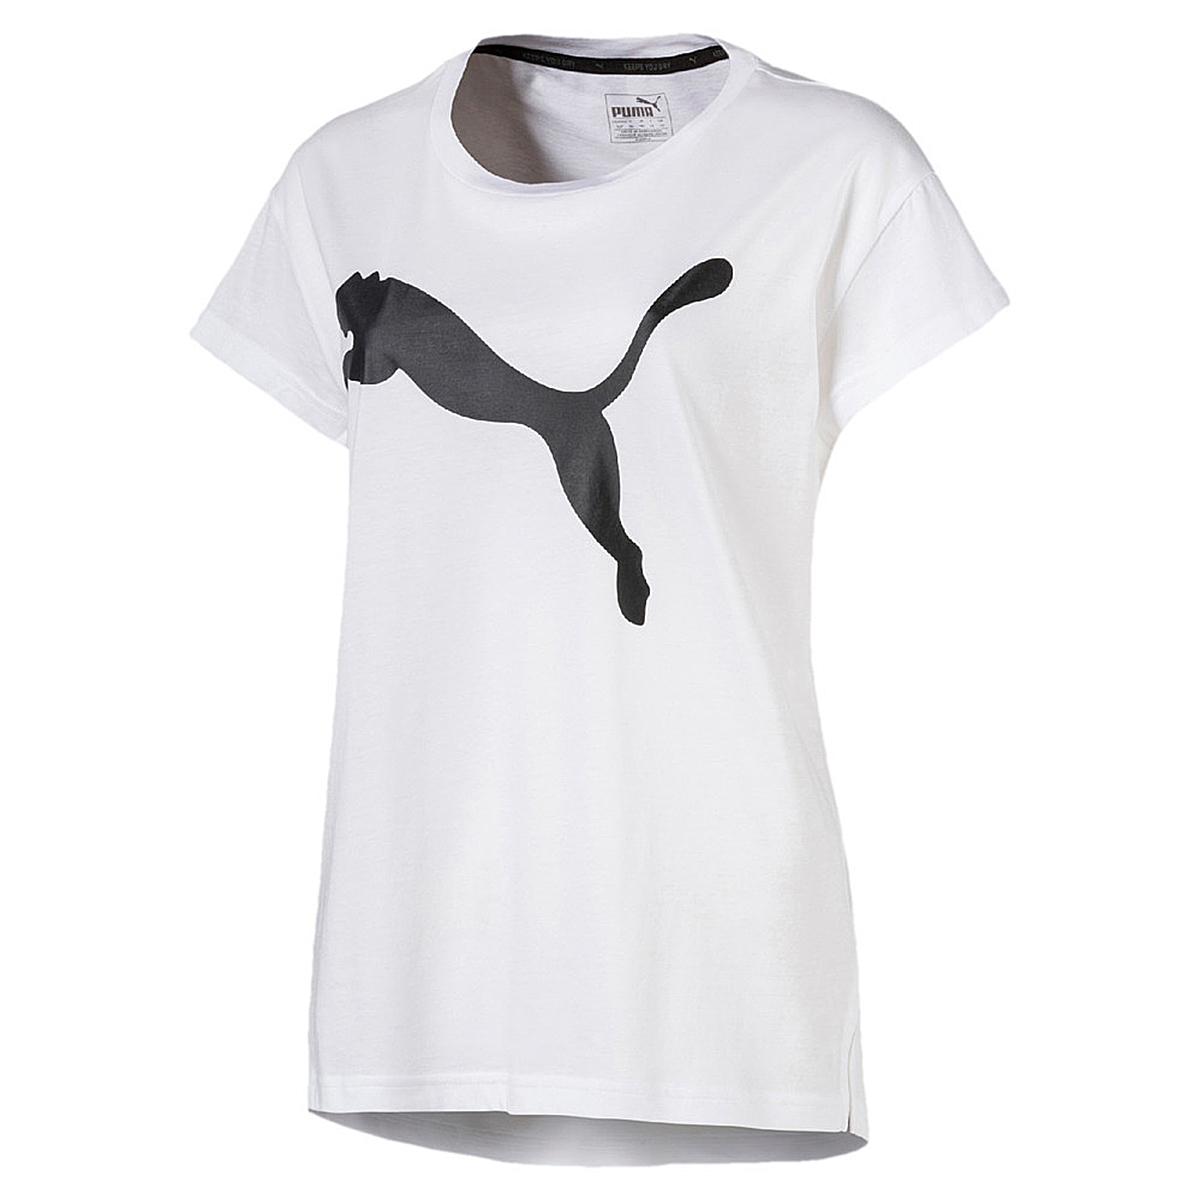 PUMA Damen Active Logo Tee DryCell T-Shirt weiss 852006